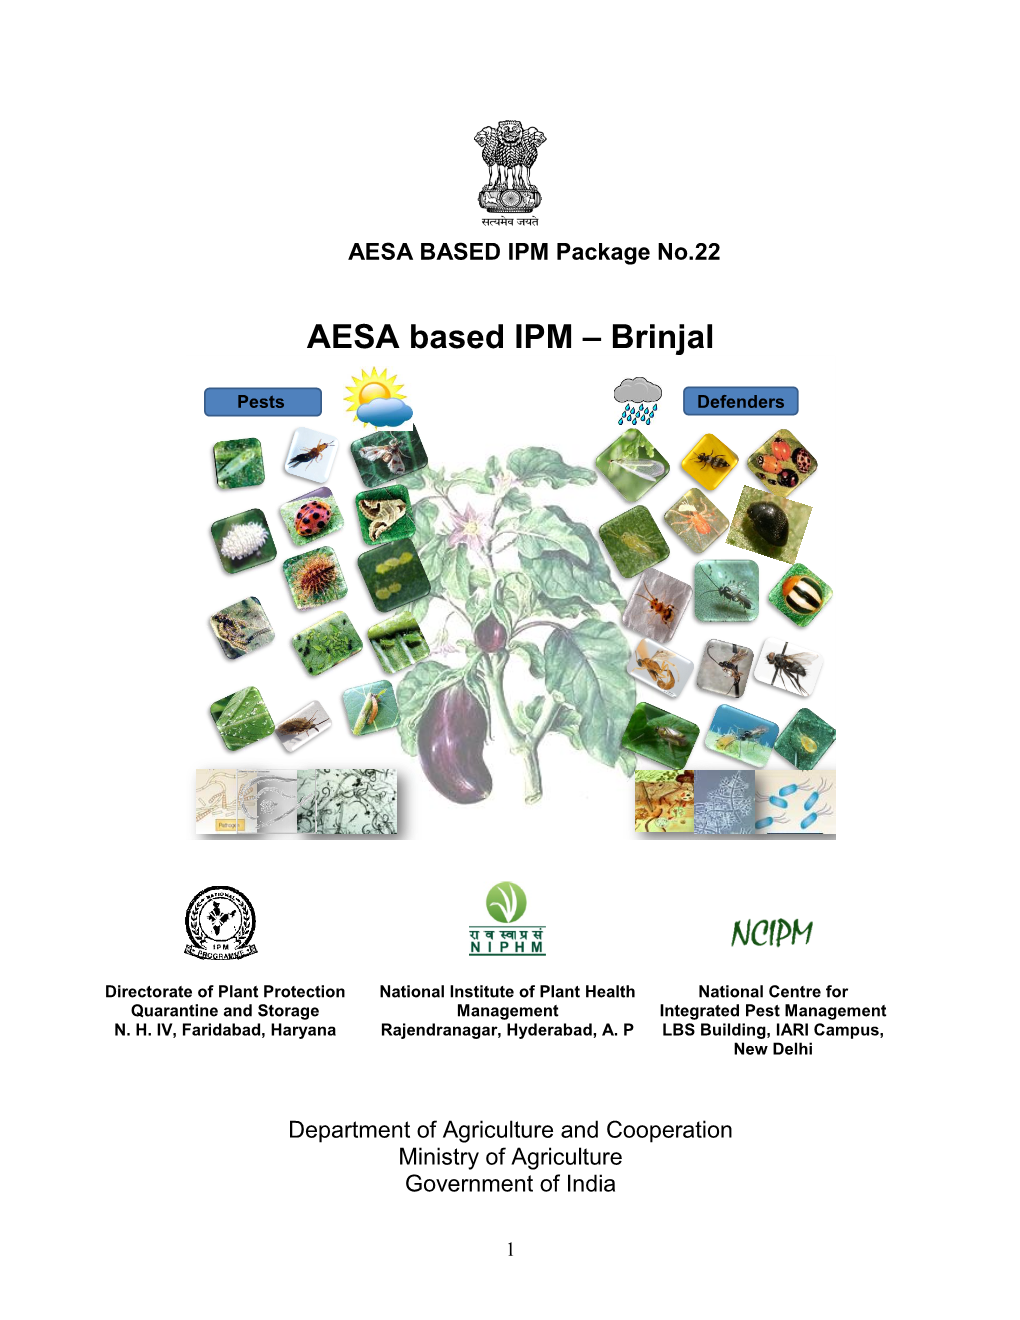 AESA Based IPM – Brinjal